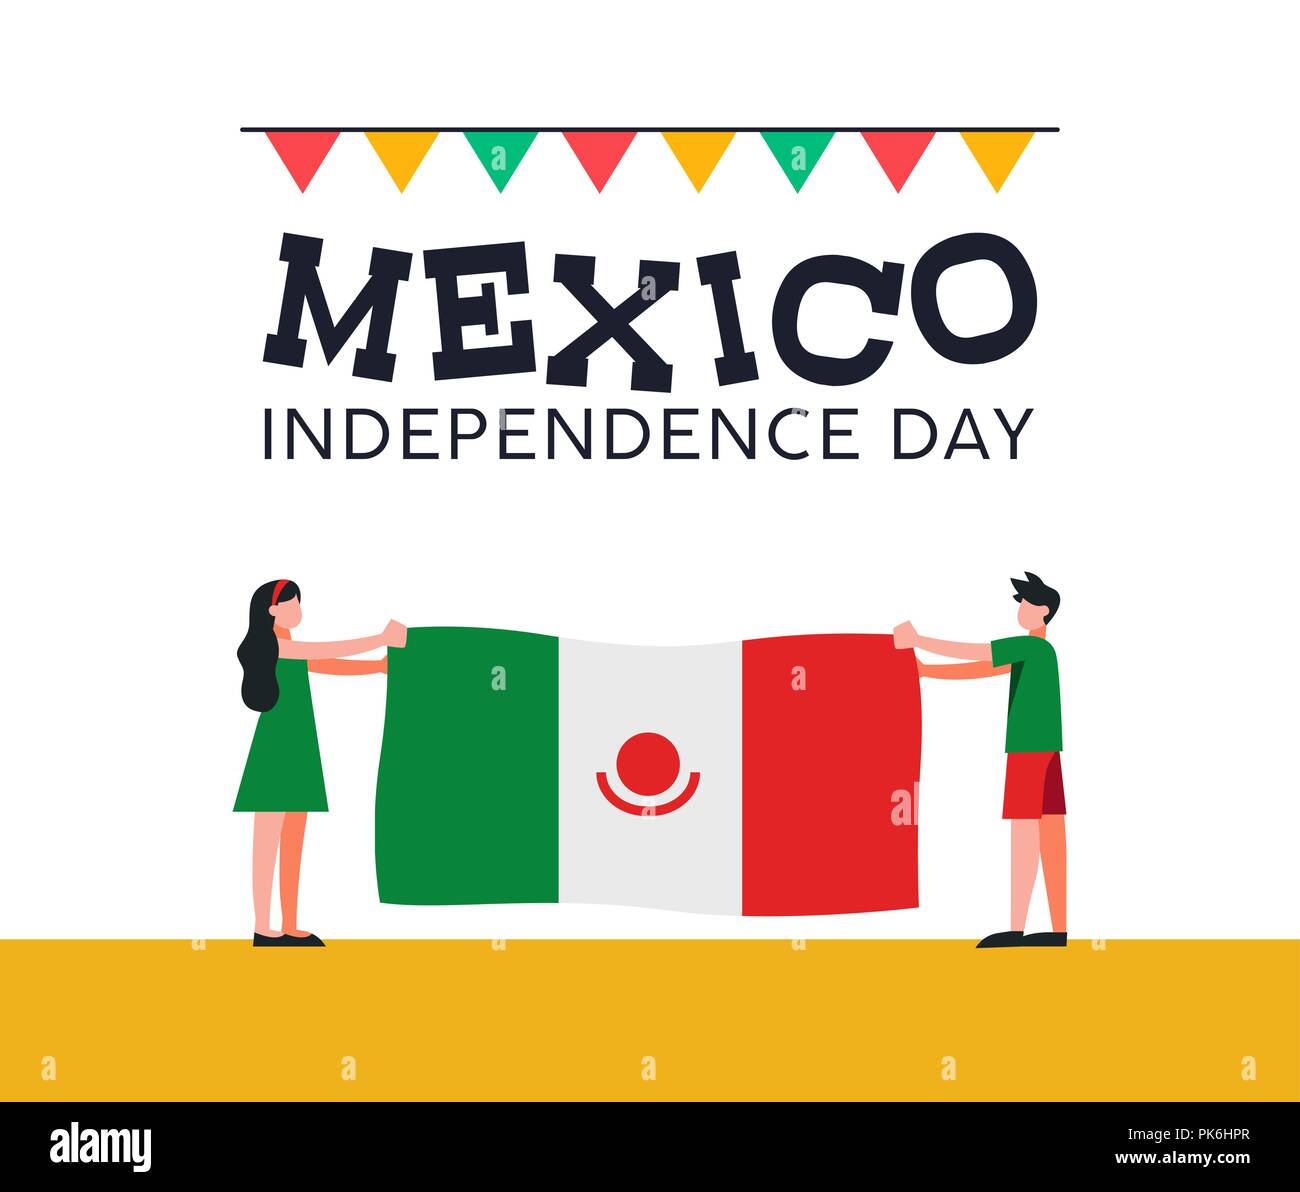 Gerne Mexiko Tag der Unabhängigkeit Abbildung. Traditionelle nationale Feier Design mit Jungen und Mädchen, dass mexikanische Land Flagge für September holid Stock Vektor